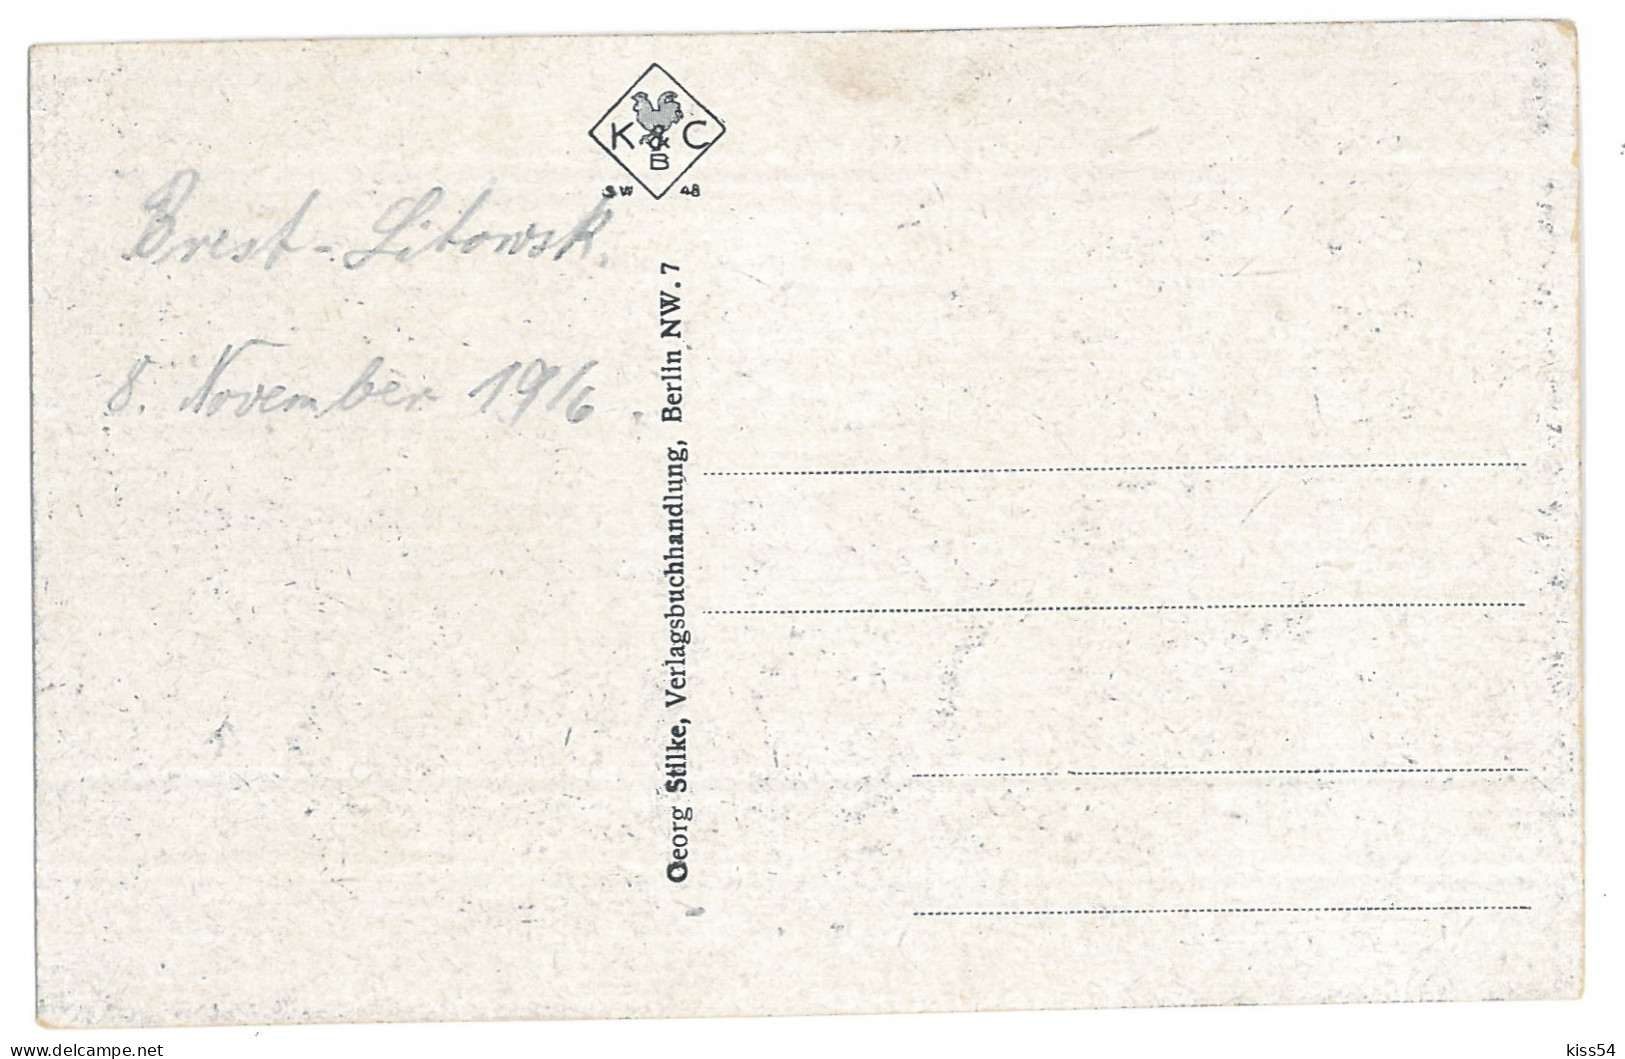 BL 28 - 13825 BREST-LITOWSK, Belarus - Old Postcard - Unused - 1916 - Belarus